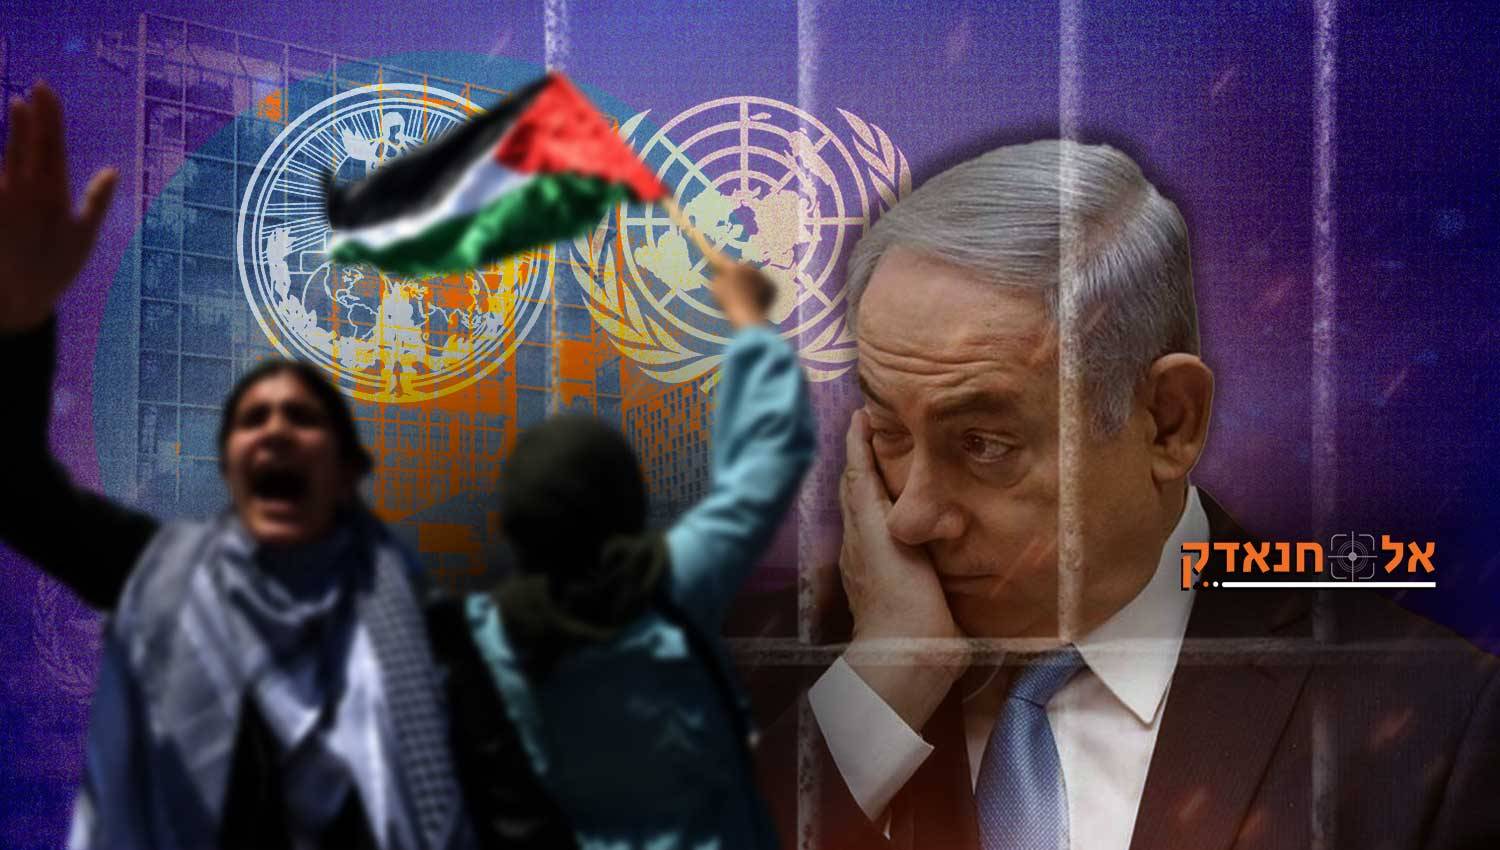 וושינגטון פוסט: הבידוד של ישראל בזירה העולמית הולך ומעמיק